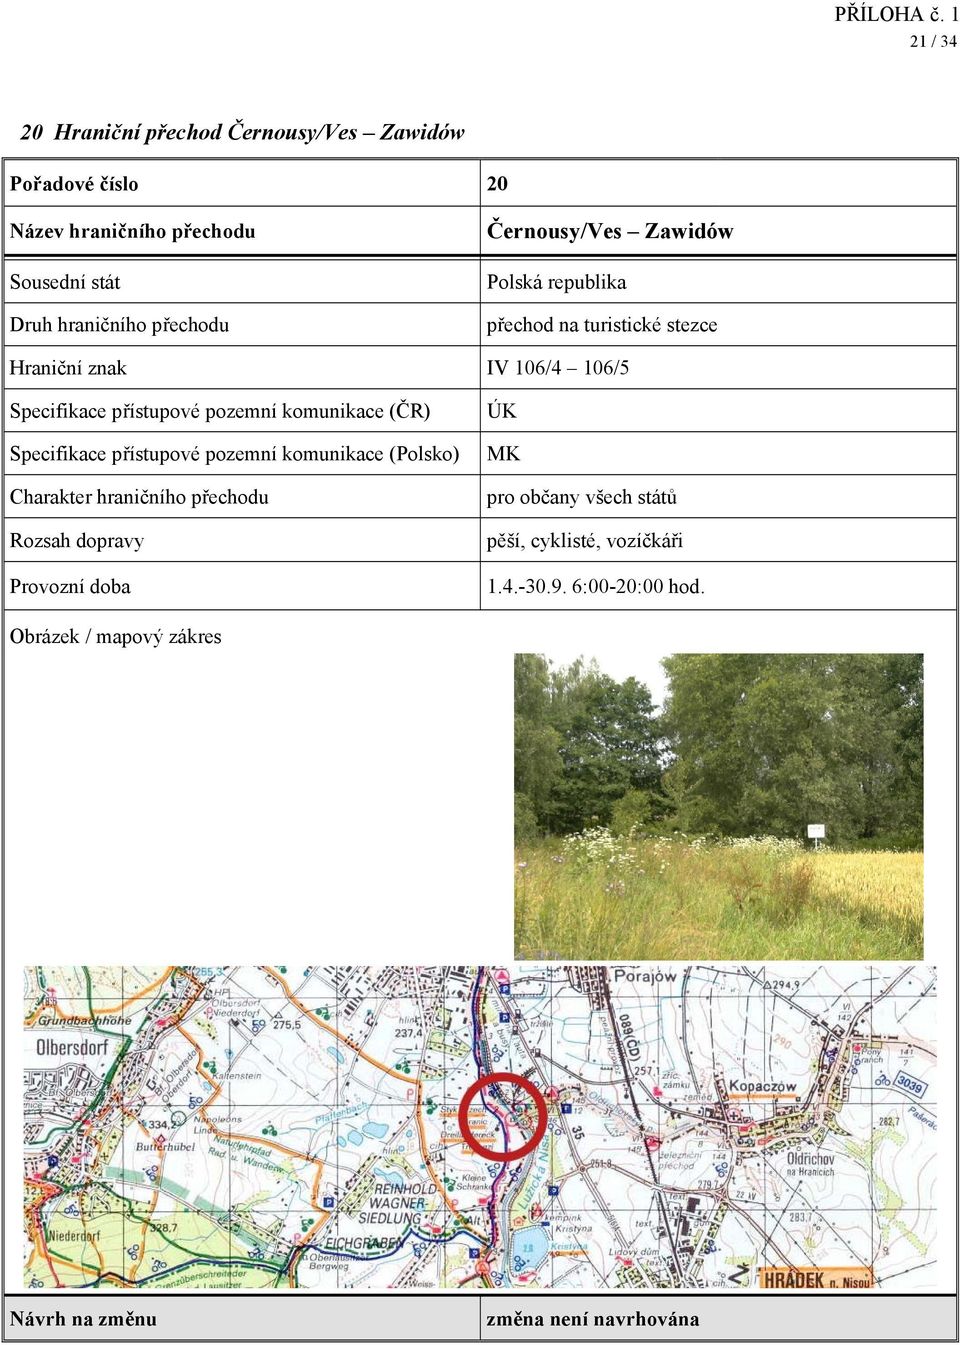 106/4 106/5 Specifikace přístupové pozemní komunikace (Polsko) ÚK